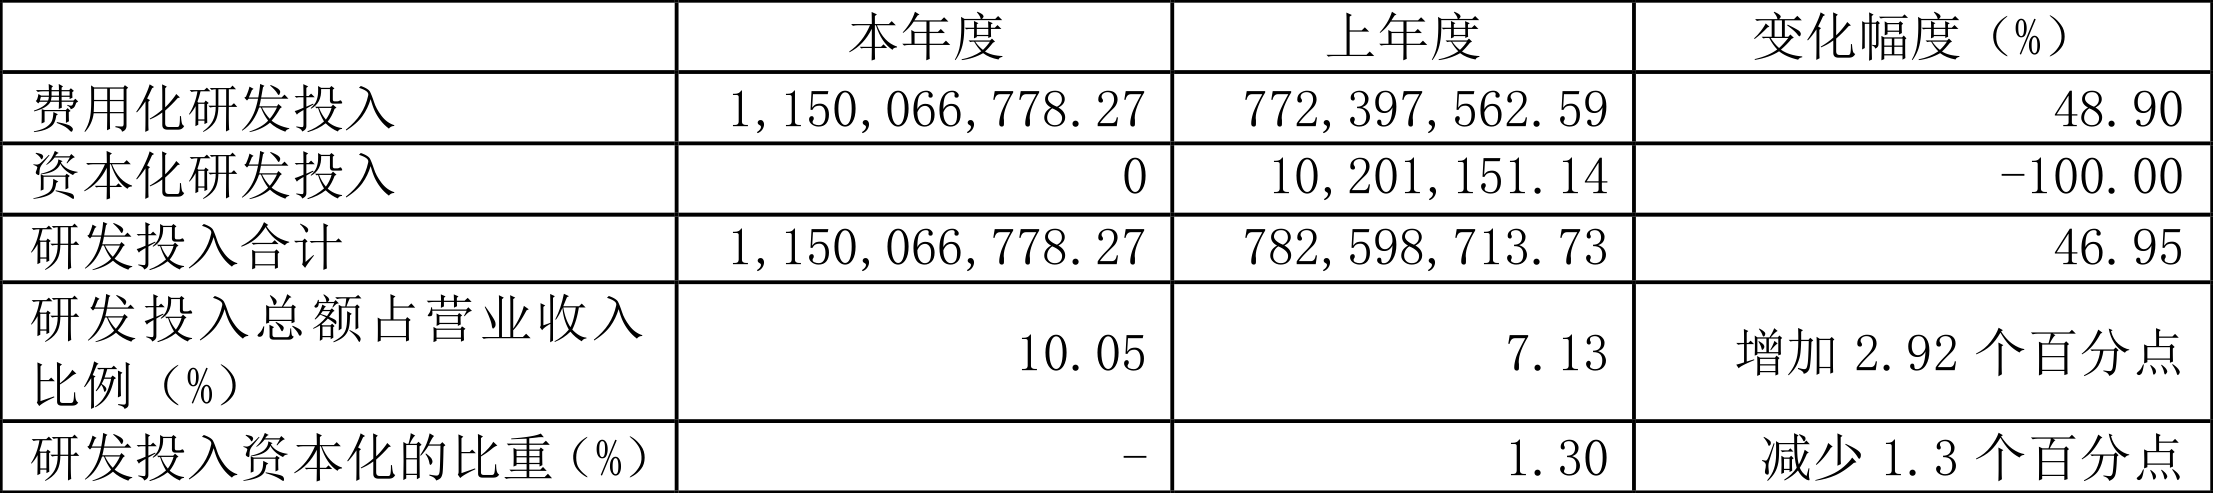 珠海冠宇：2023年净利同比增长278.45% 拟10派2.7元